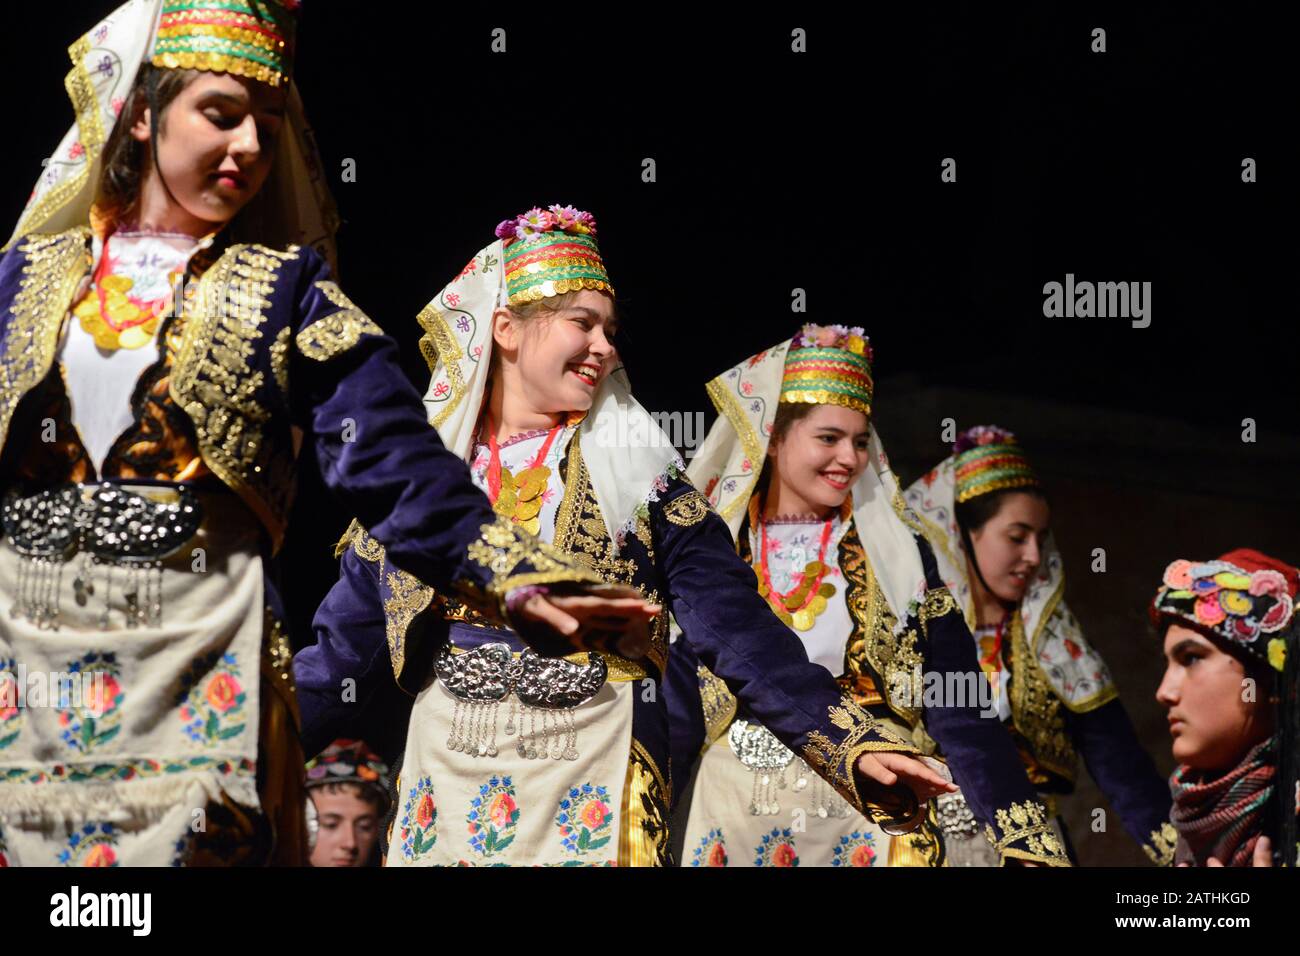 Danseurs folkloriques albanaises avec costumes traditionnels, célébrer le ramadan à Skopje, Macédoine Banque D'Images